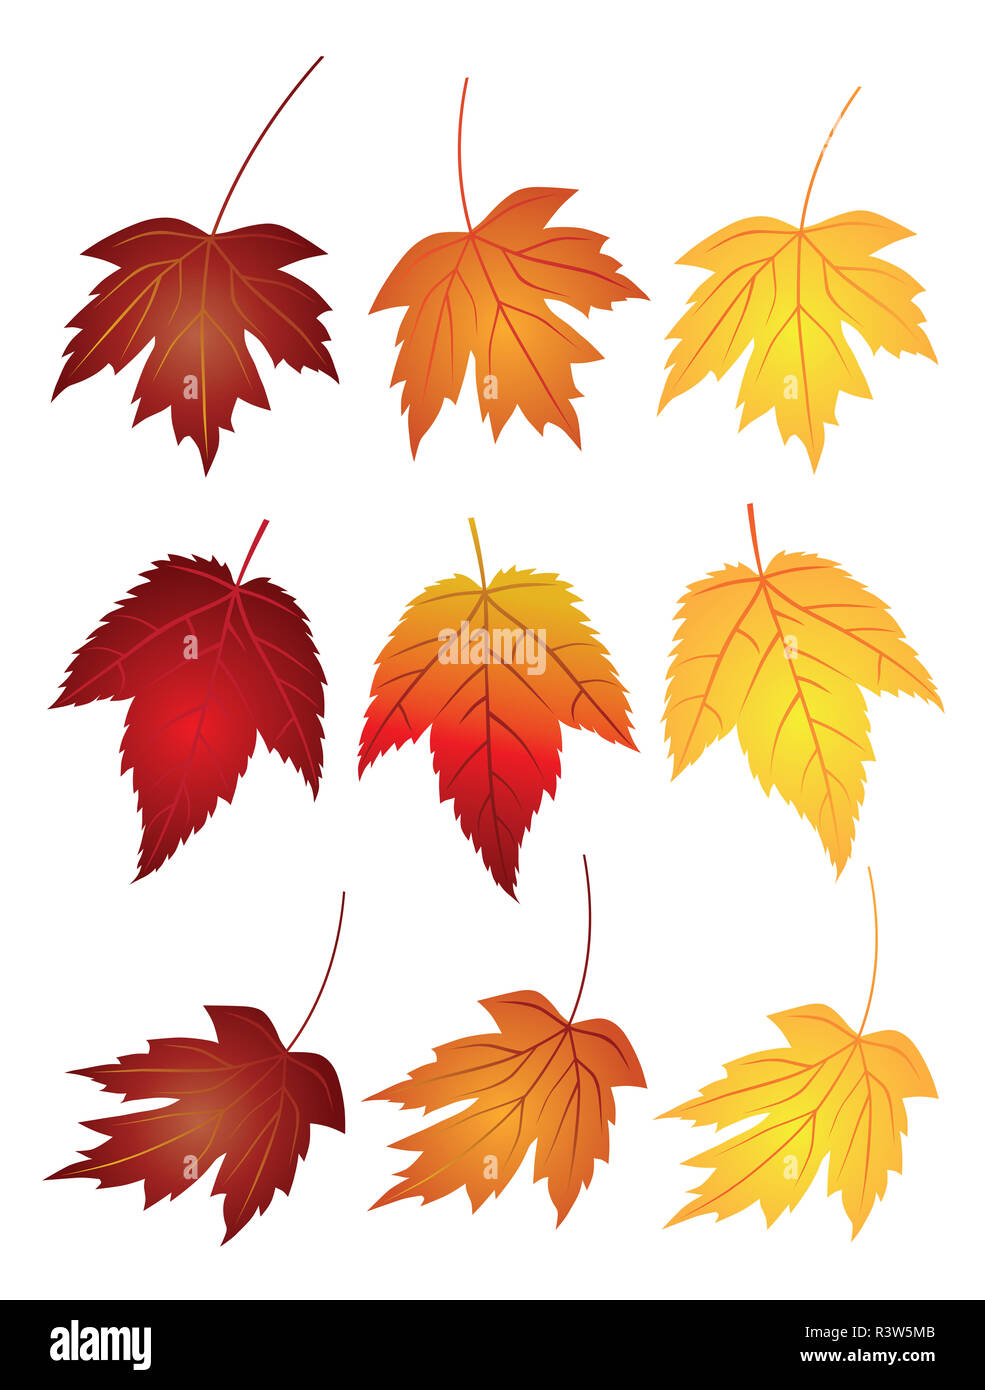 Feuilles d'érable d'illustration en couleurs d'automne Banque D'Images